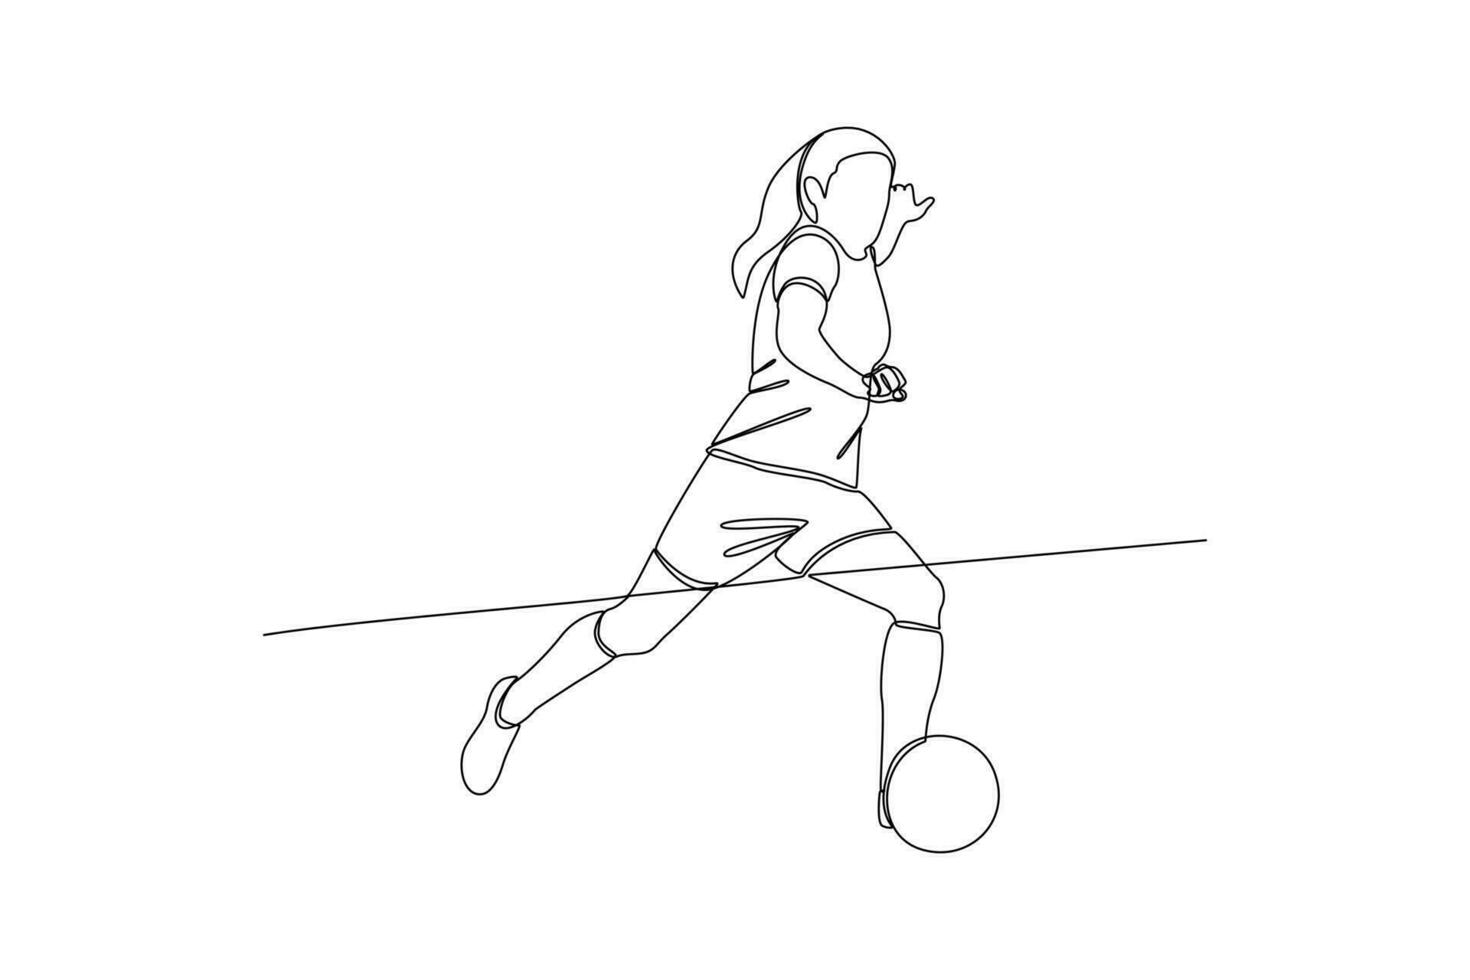 kontinuierlich einer Linie Zeichnung komisch weiblich Fußball Spieler Konzept. Gekritzel Vektor Illustration.